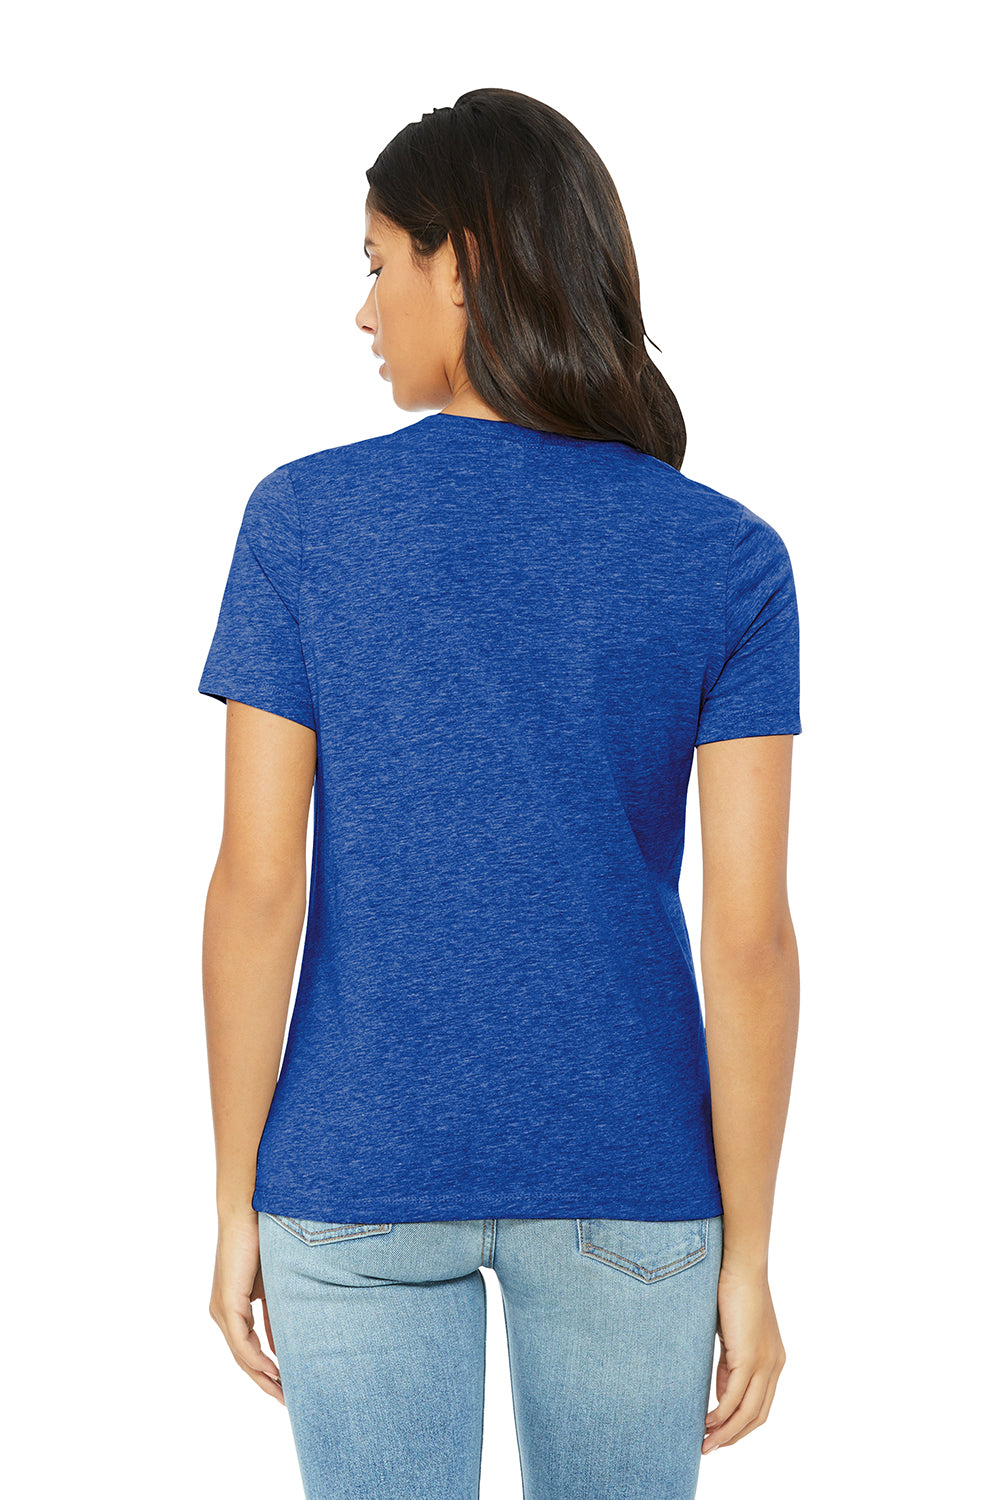 Bella + Canvas BC6400CVC/6400CVC Womens CVC Short Sleeve Crewneck T-Shirt Heather True Royal Blue Model Back